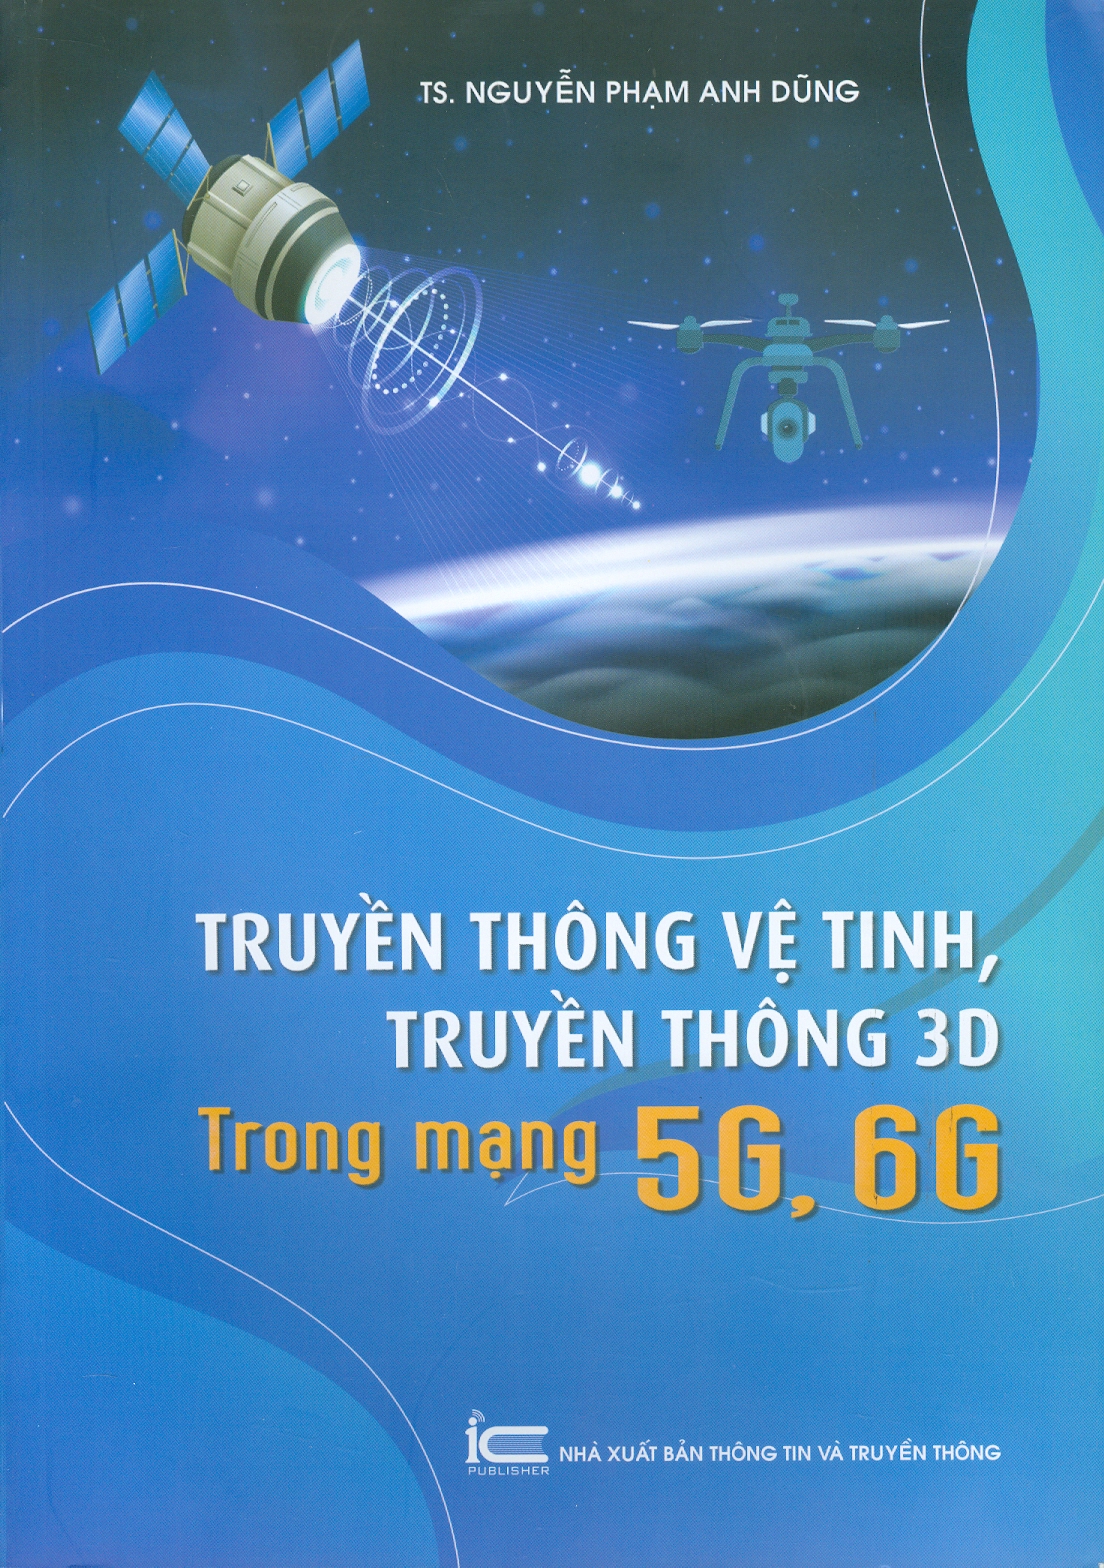 Truyền Thông Vệ Tinh, Truyền Thông 3D Trong Mạng 5G, 6G - TS. Nguyễn Phạm Anh Dũng